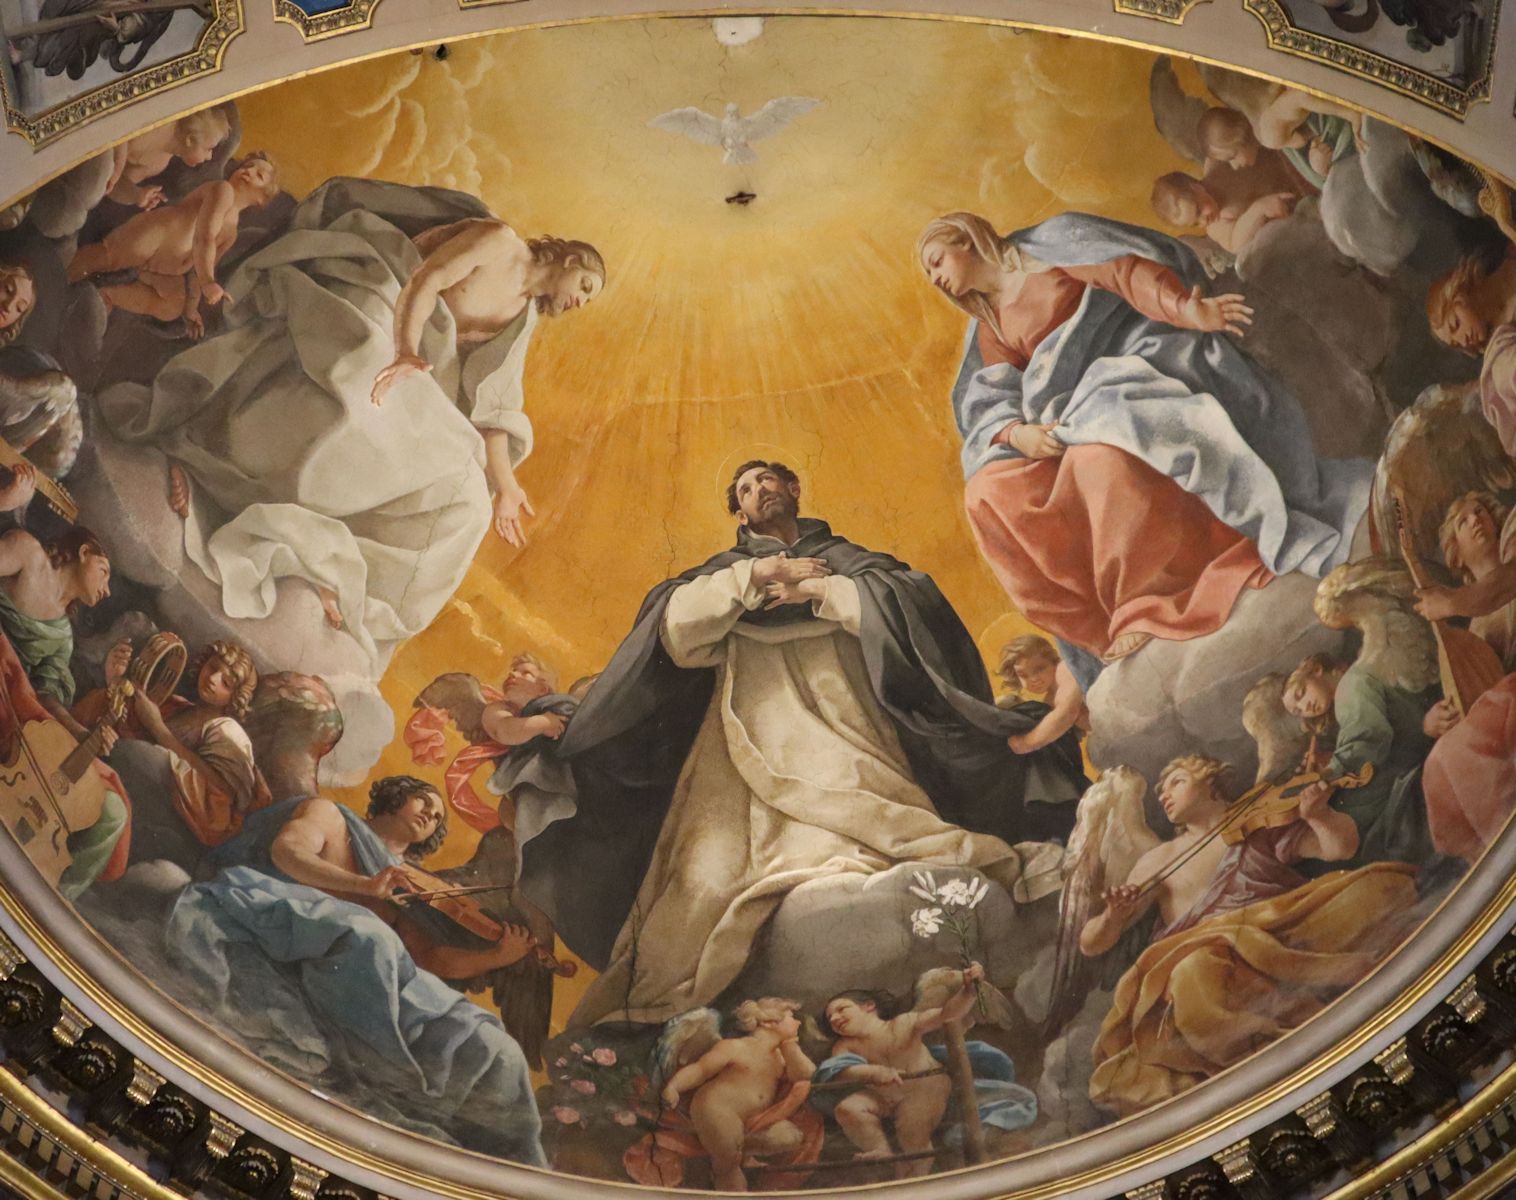 Guido Reni: Apsisfresko, 1613 bis 1615, in der Dominikus-Kapelle in der Basilika San Domenico in Bologna